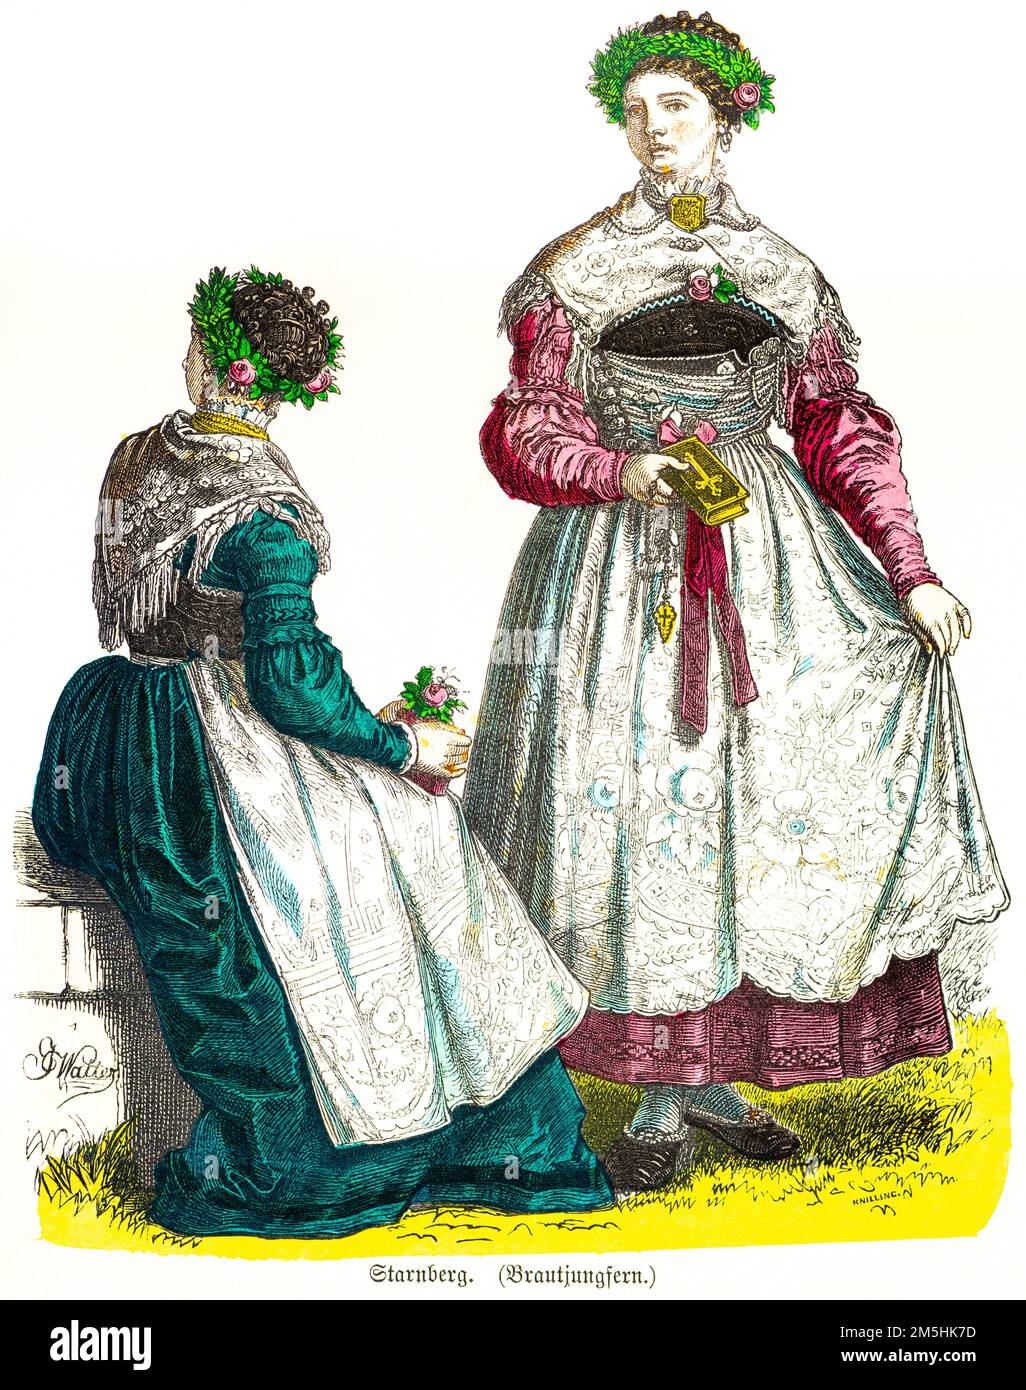 Costumes traditionnels, demoiselle d'honneur de Starnberg, Bavière, Allemagne du Sud, 19th siècle, Illustration historique en col, Münchener Bilderbogen 1890 Banque D'Images